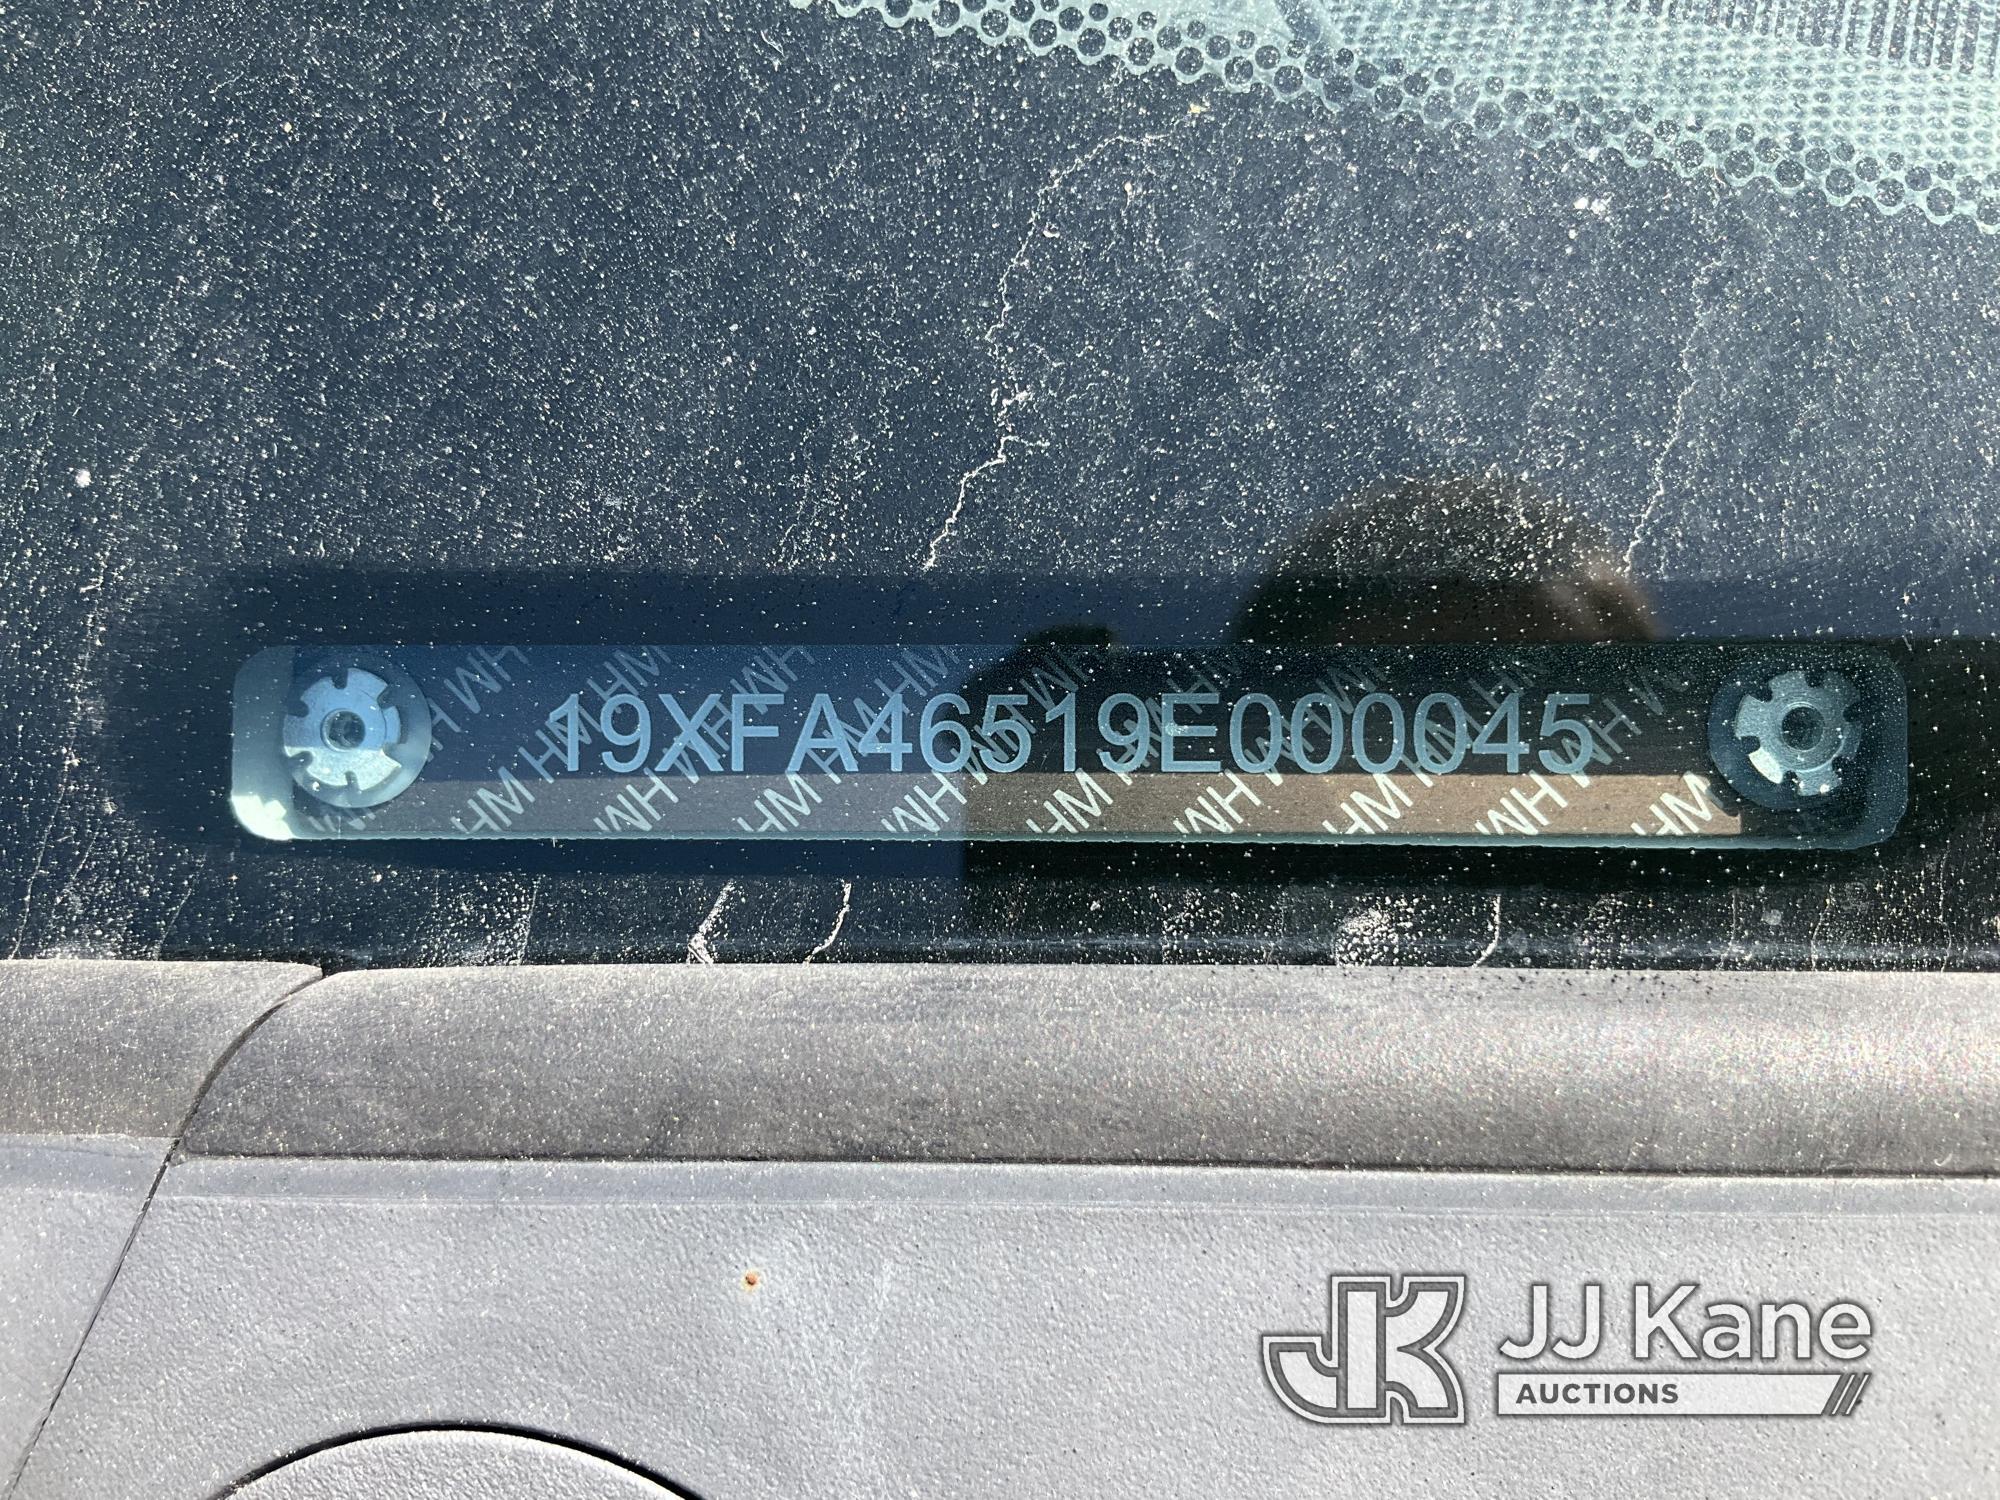 (Jurupa Valley, CA) 2009 Honda Civic GX 4-Door Sedan Runs, Moves, Missing Exasperation Date For CNG